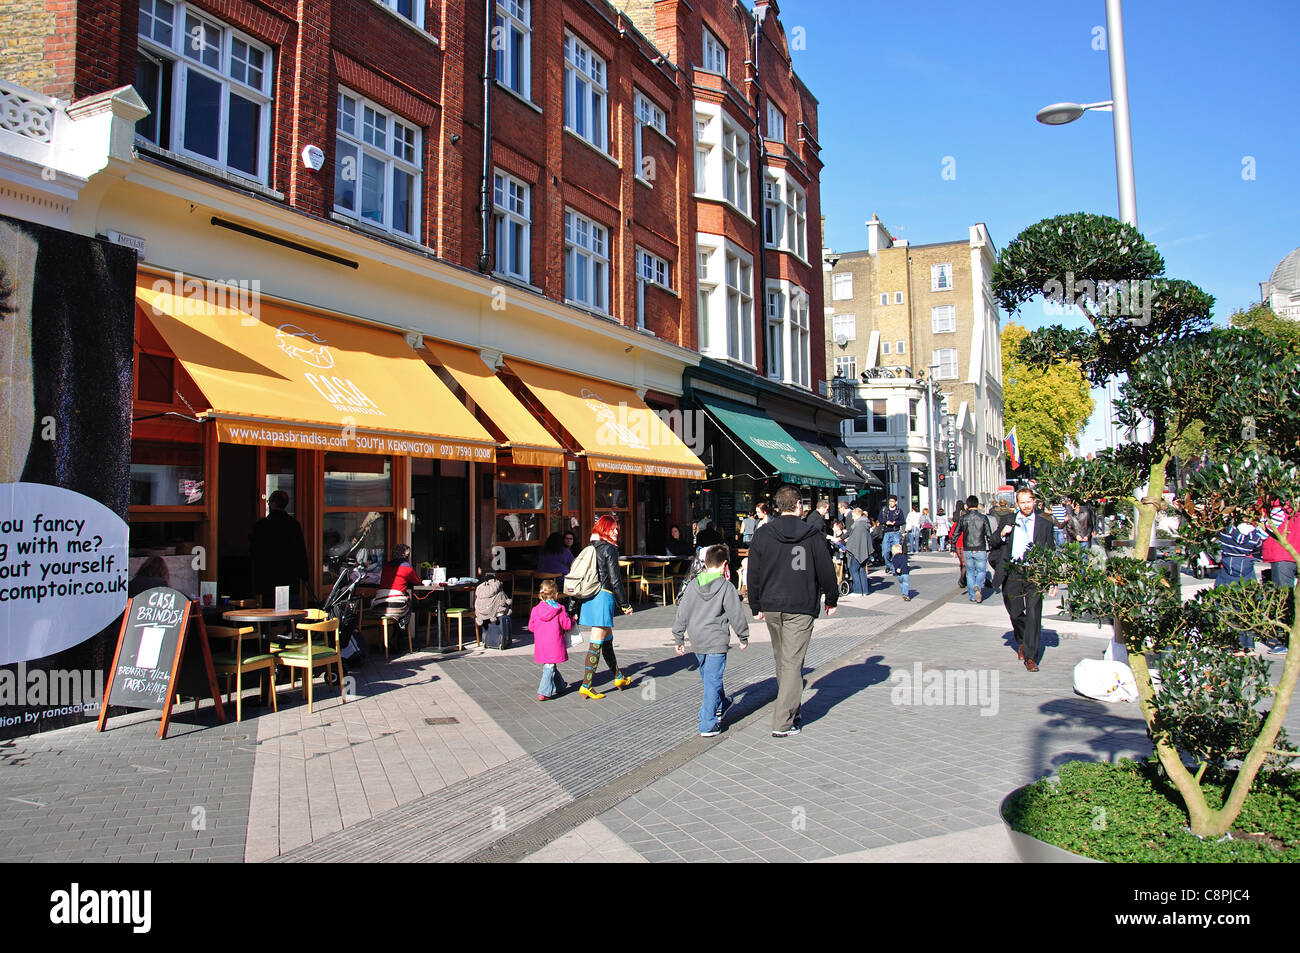 Les cafés en plein air sur l'Exhibition Road, Kensington, quartier royal de Kensington et Chelsea, Greater London, Angleterre, Royaume-Uni Banque D'Images